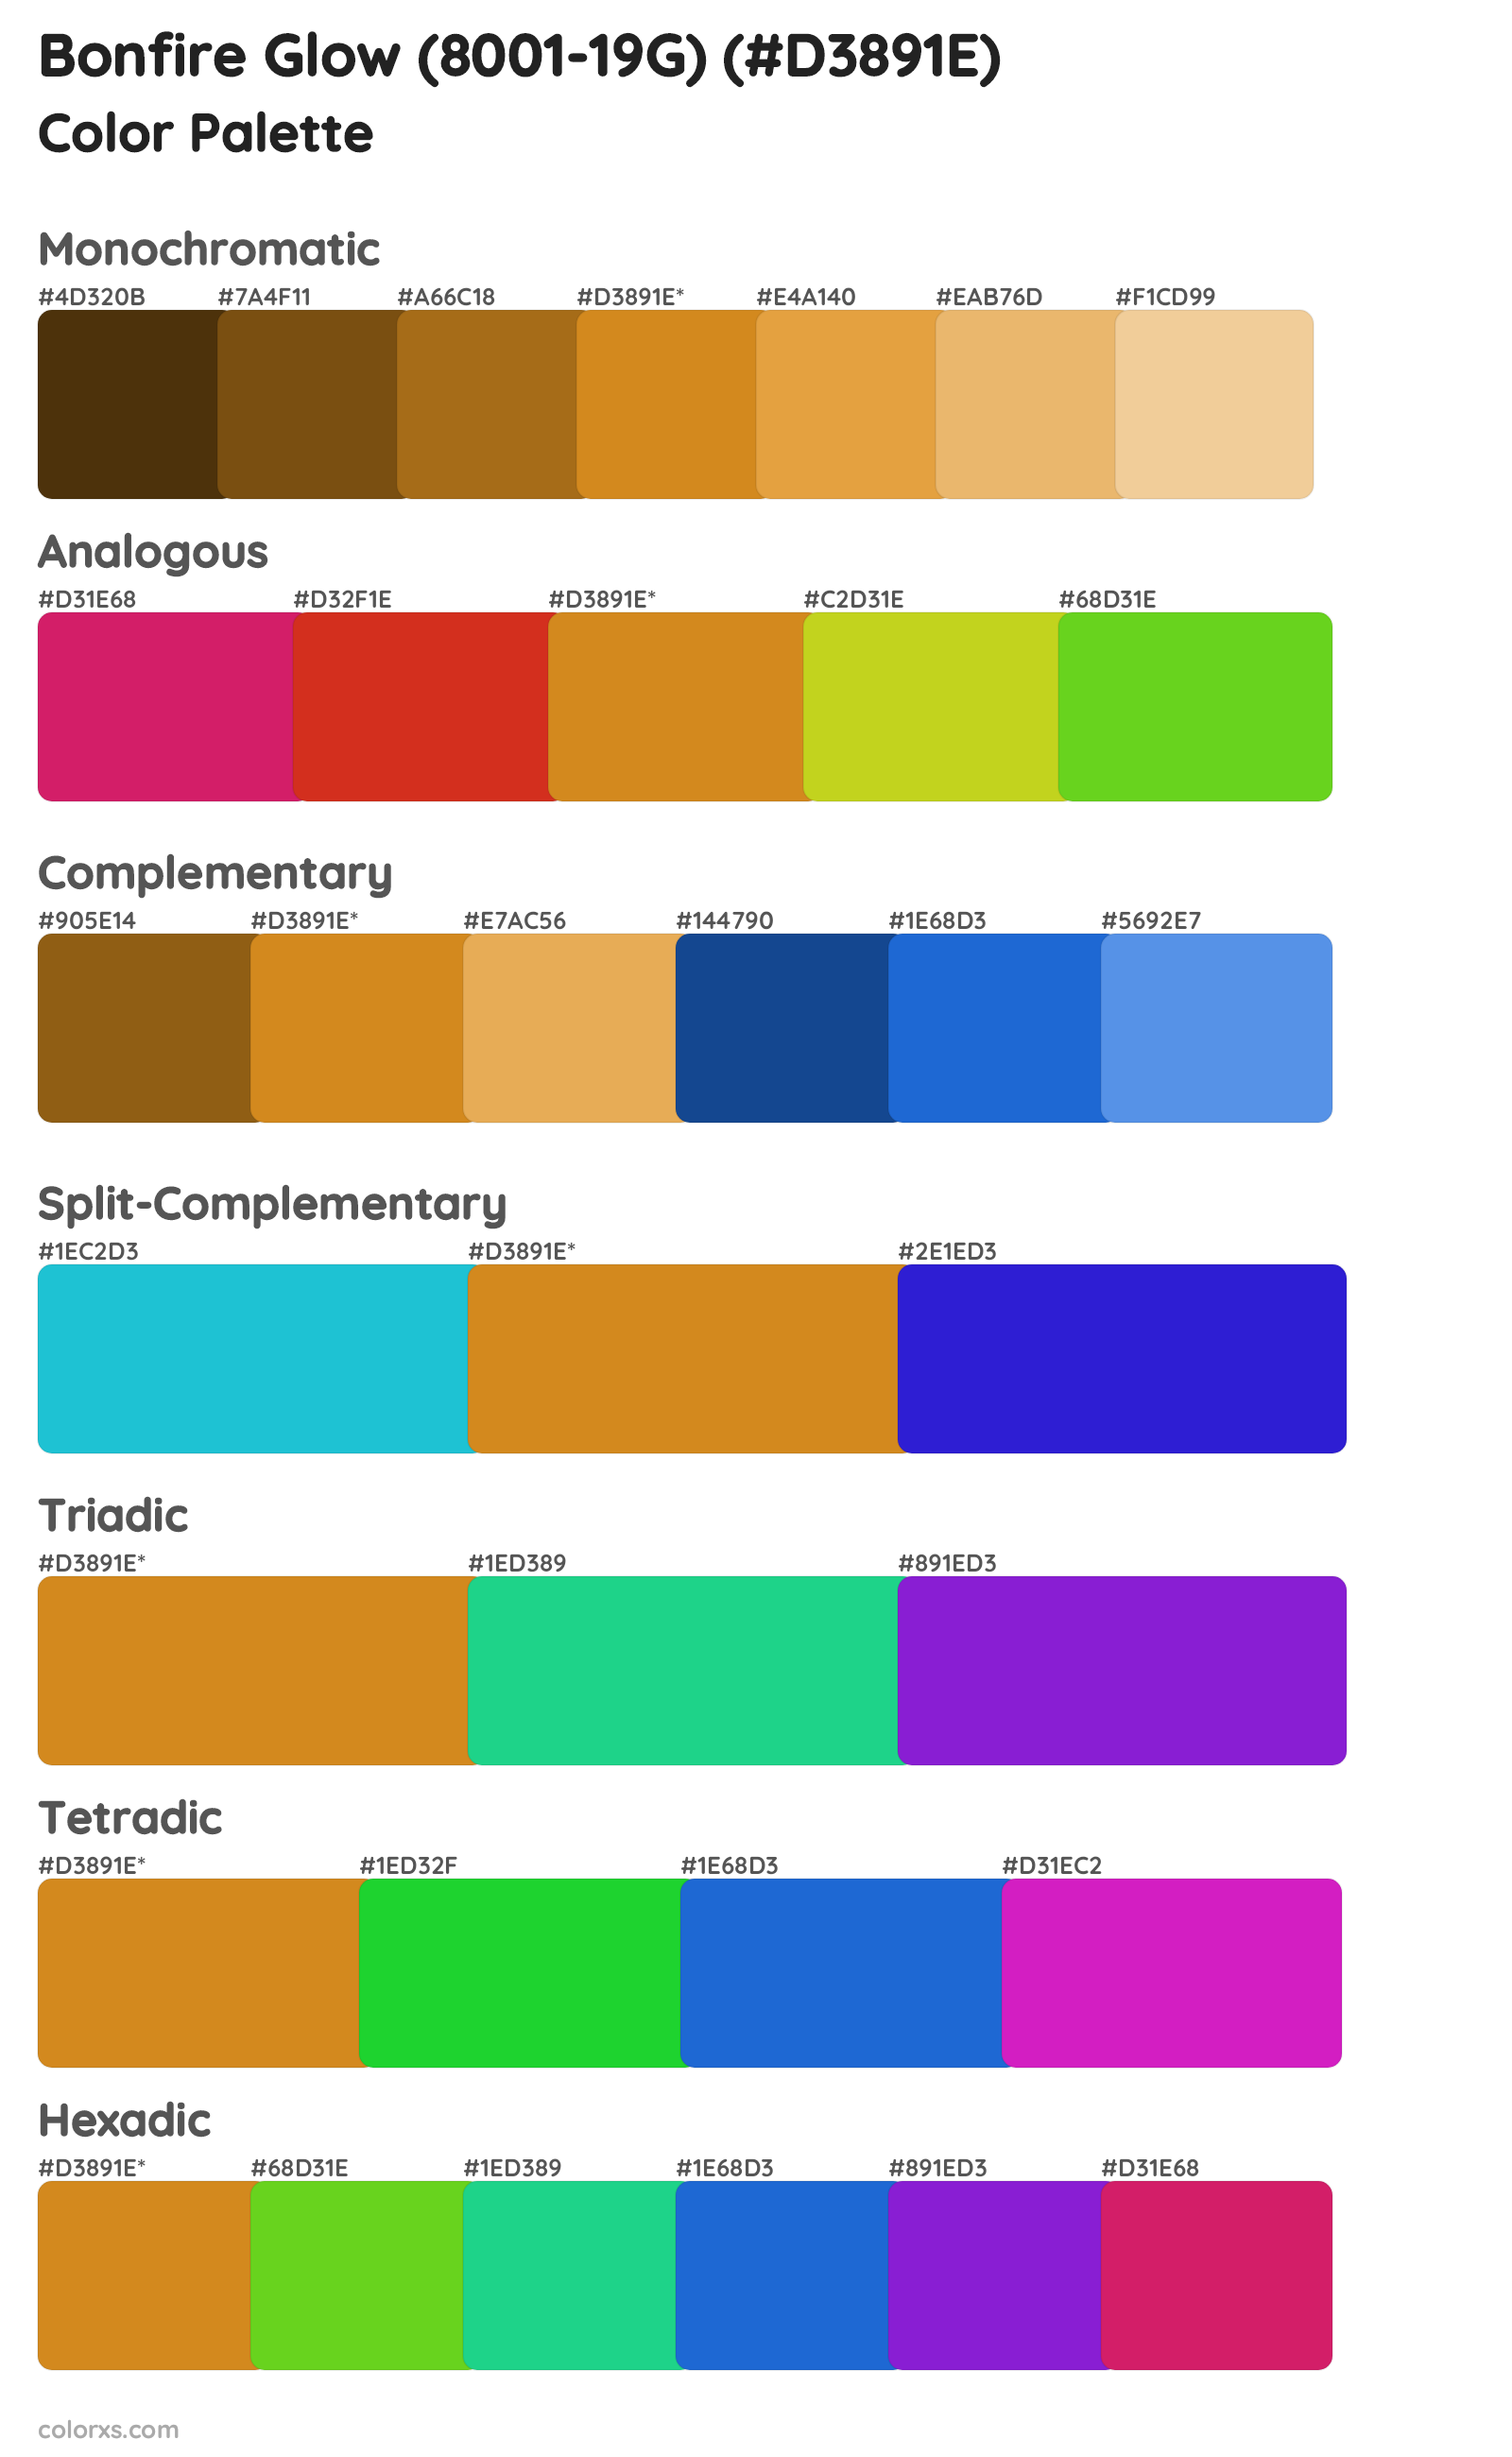 Bonfire Glow (8001-19G) Color Scheme Palettes